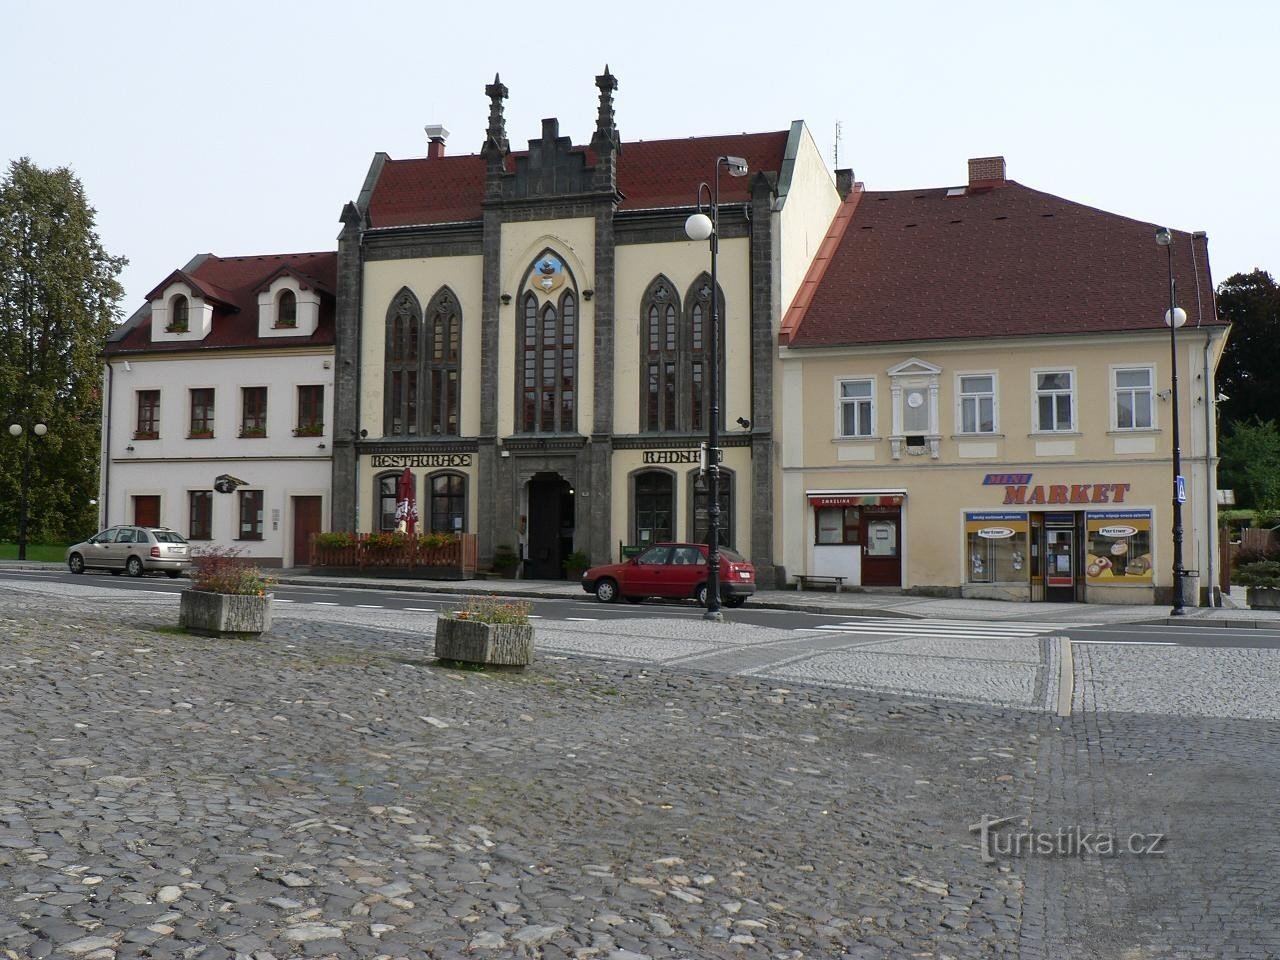 Chřibská, egykori városháza